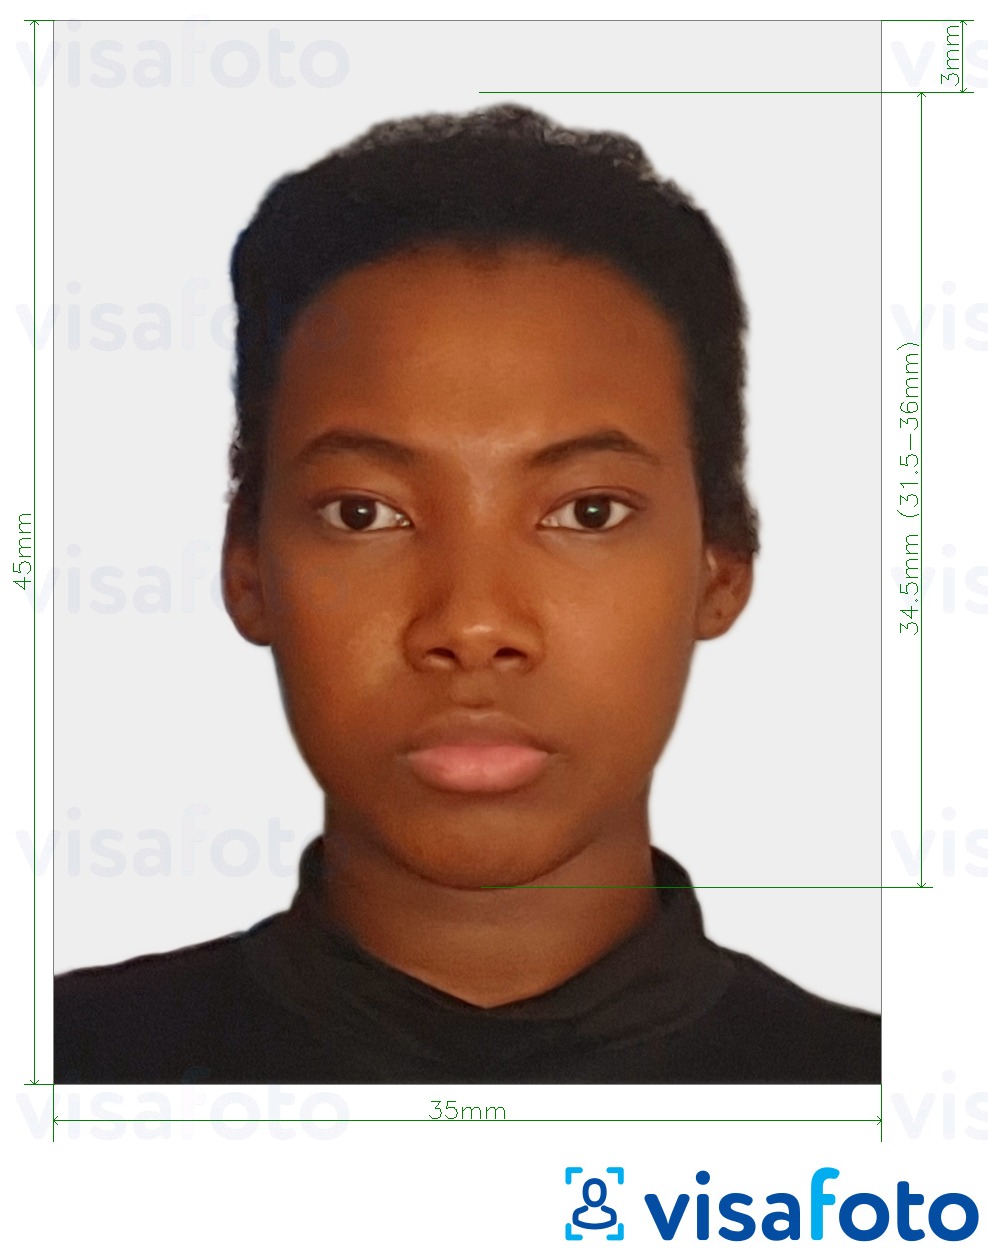 Contoh dari foto untuk Visa Sierra Leone 35x45 mm (3,5x4,5 cm) dengan ukuran spesifikasi yang tepat